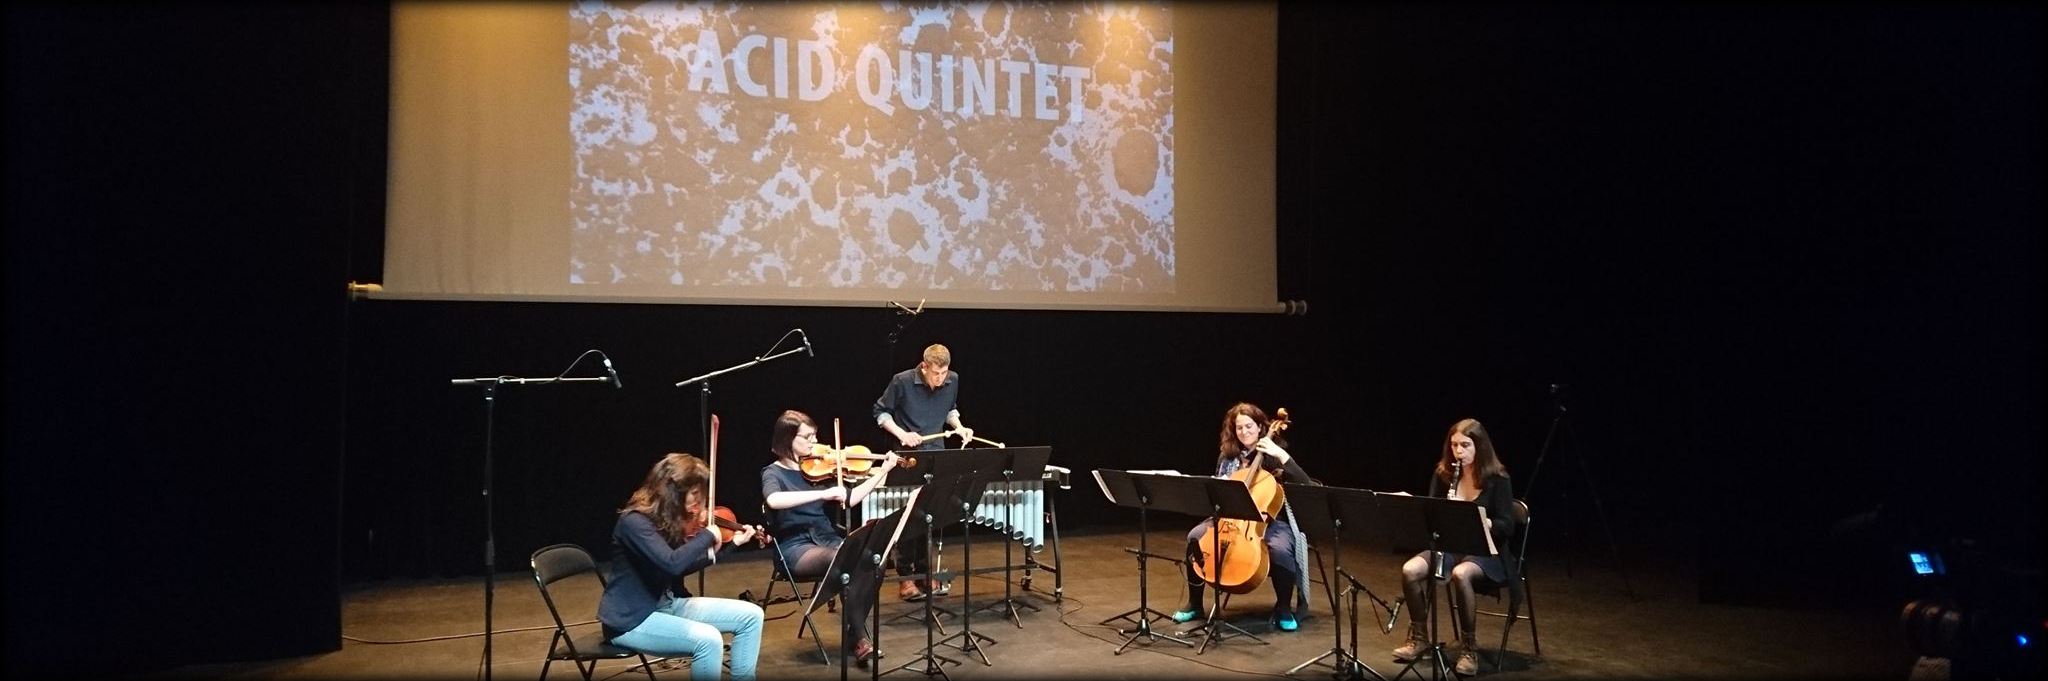 Acid Quintet